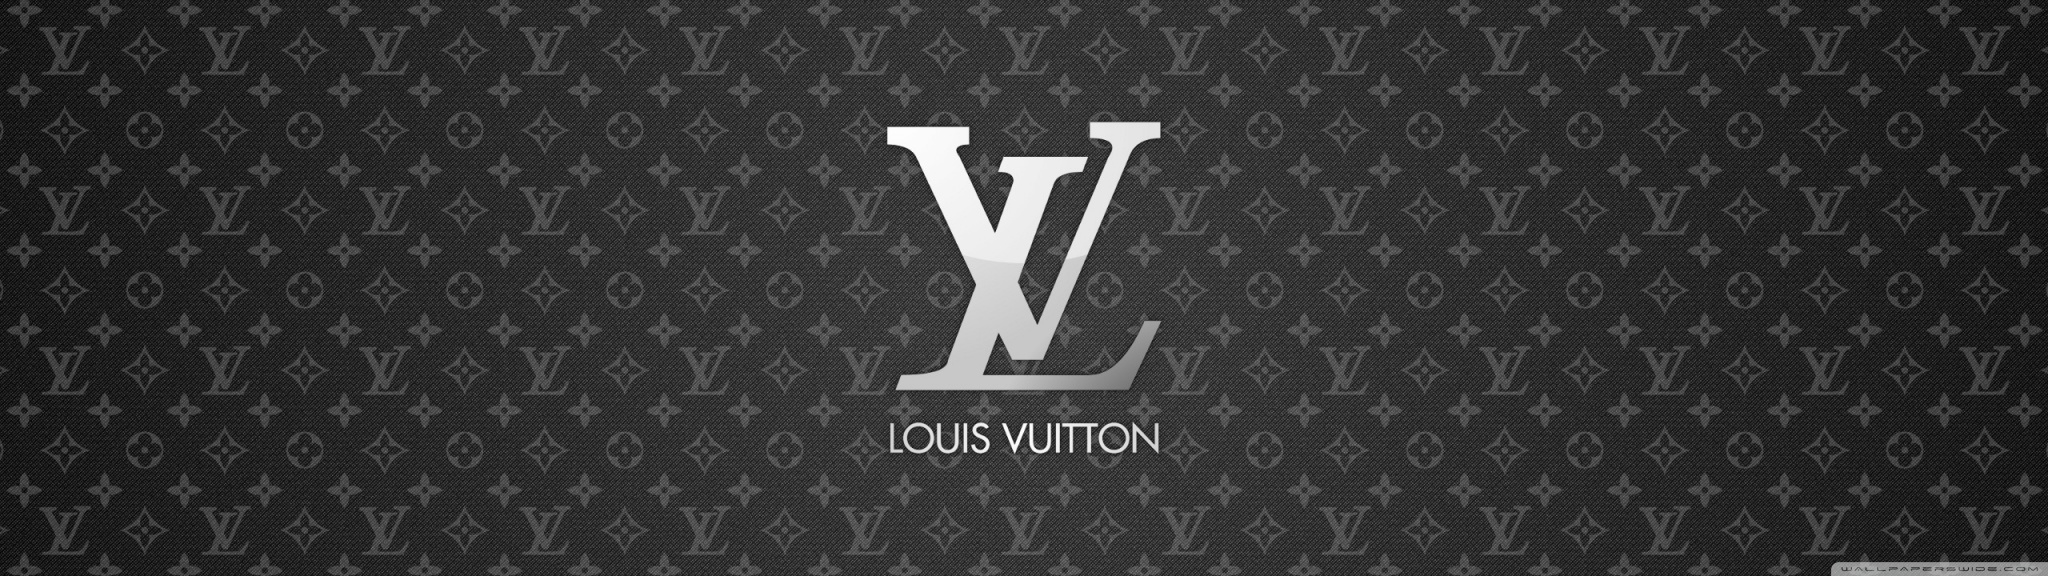 Louis Vuitton Ultra HD Desktop Background Wallpaper for 4K UHD TV ...